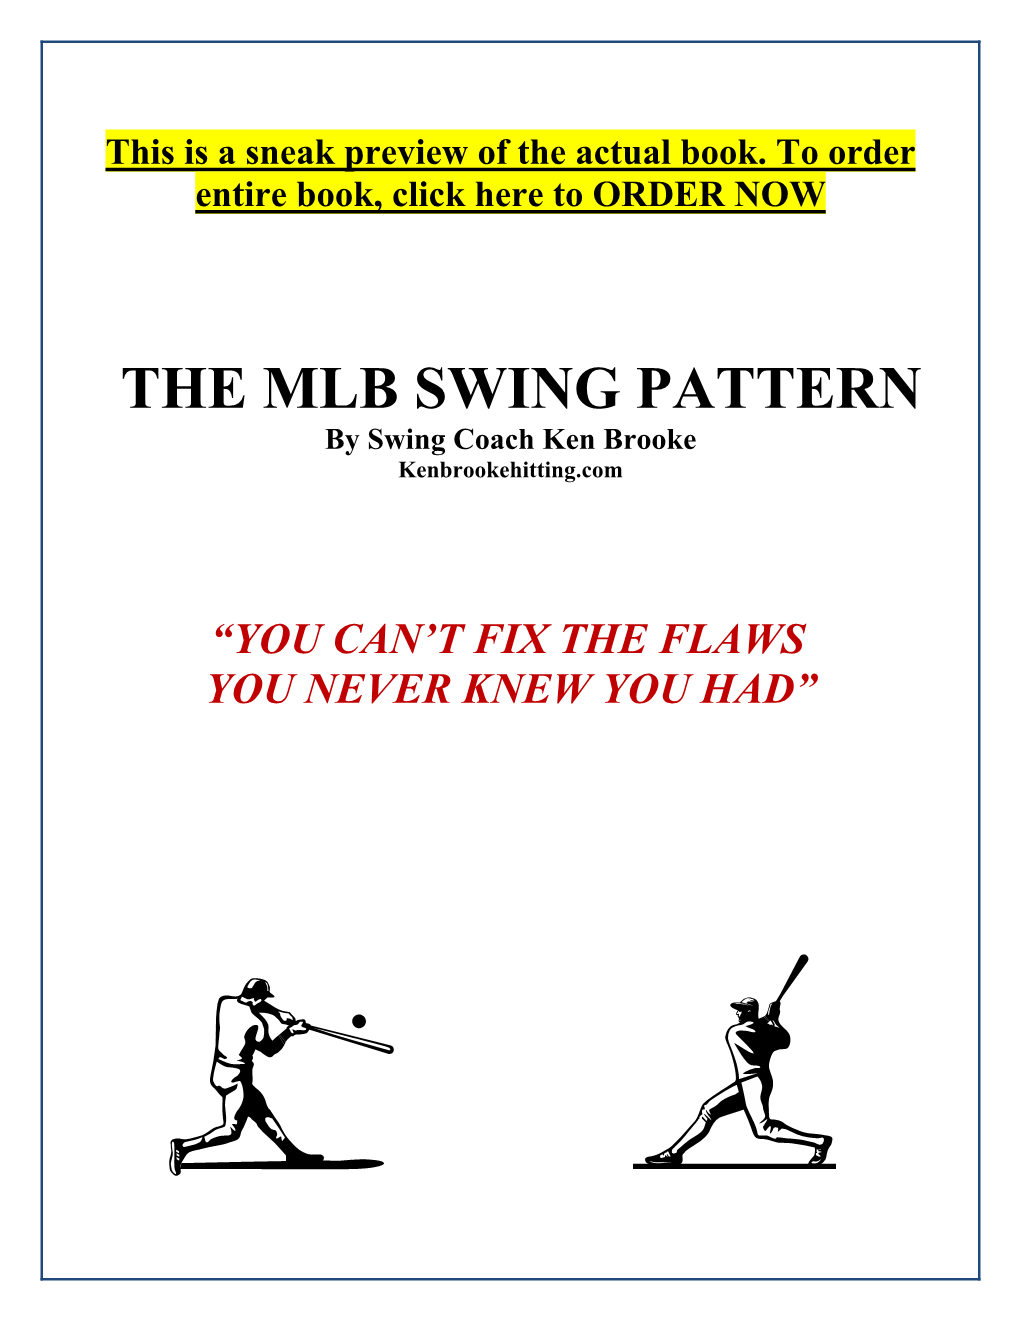 THE MLB SWING PATTERN by Swing Coach Ken Brooke Kenbrookehitting.Com